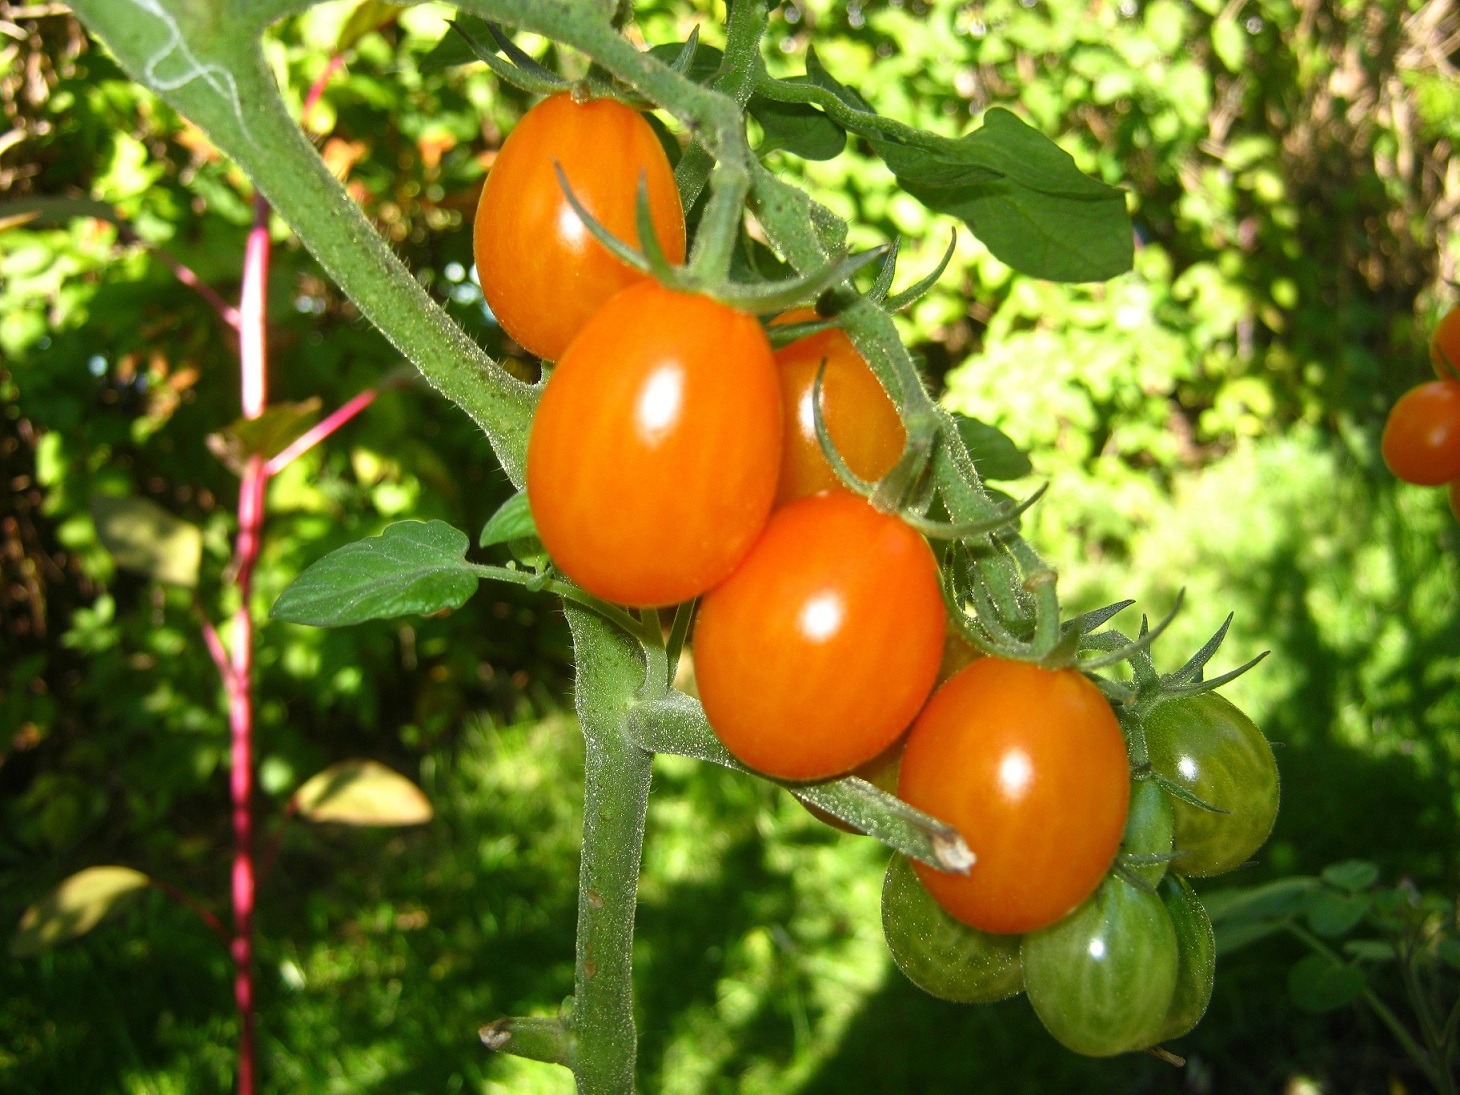 Wonderfful orange grape tomatoes with very nice, sweet and fruity taste. 